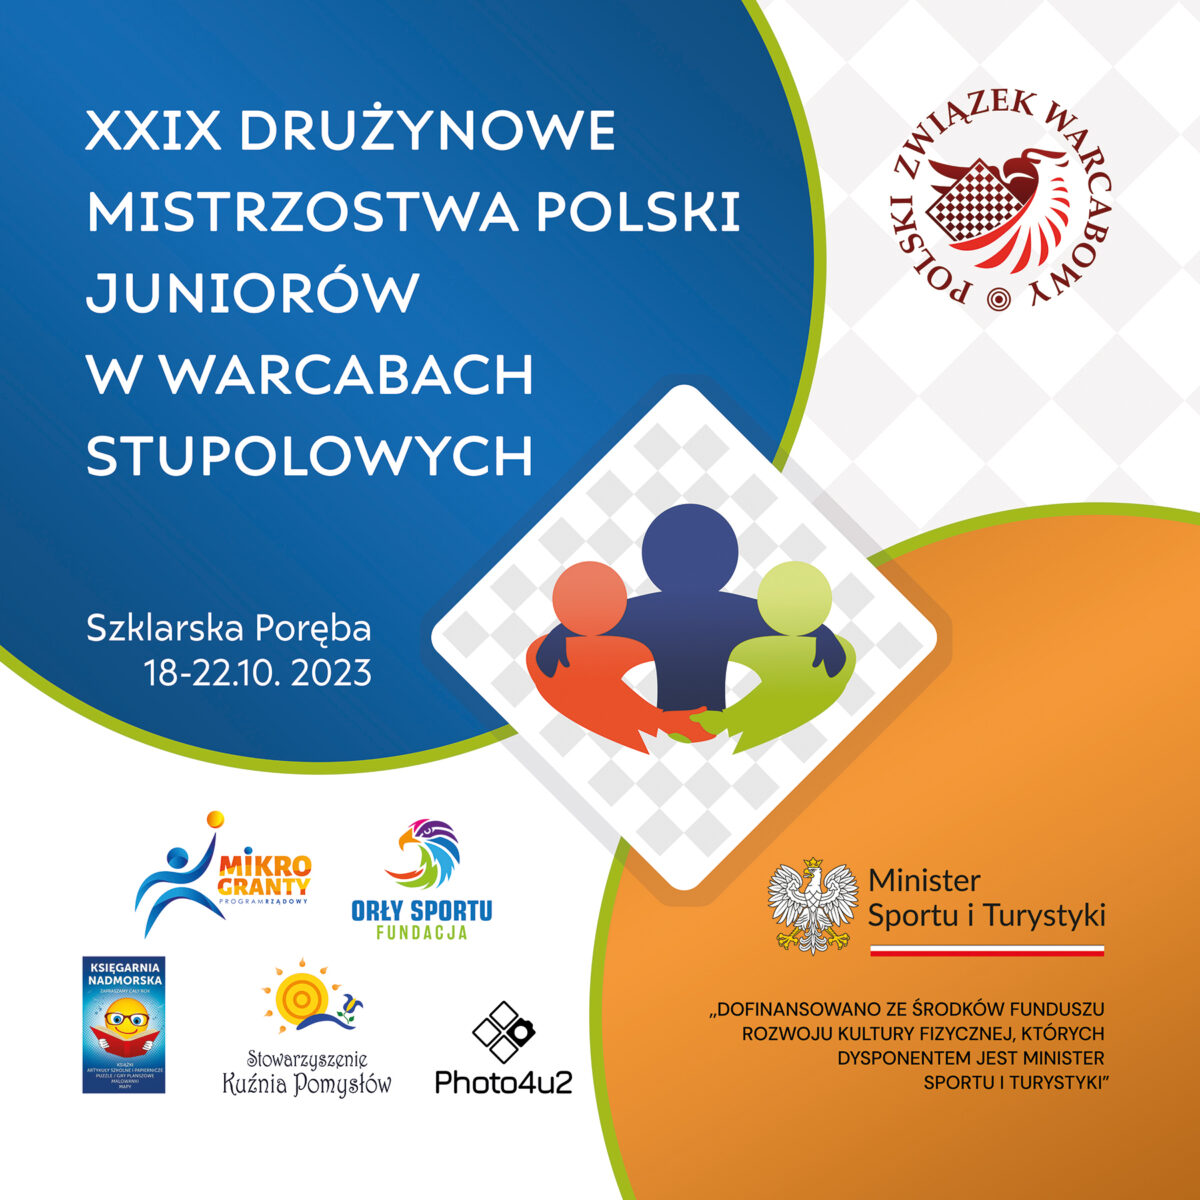 Wielkie emocje na XXIX Drużynowych Mistrzostwach Polski Juniorów w Warcabach Stupolowych!